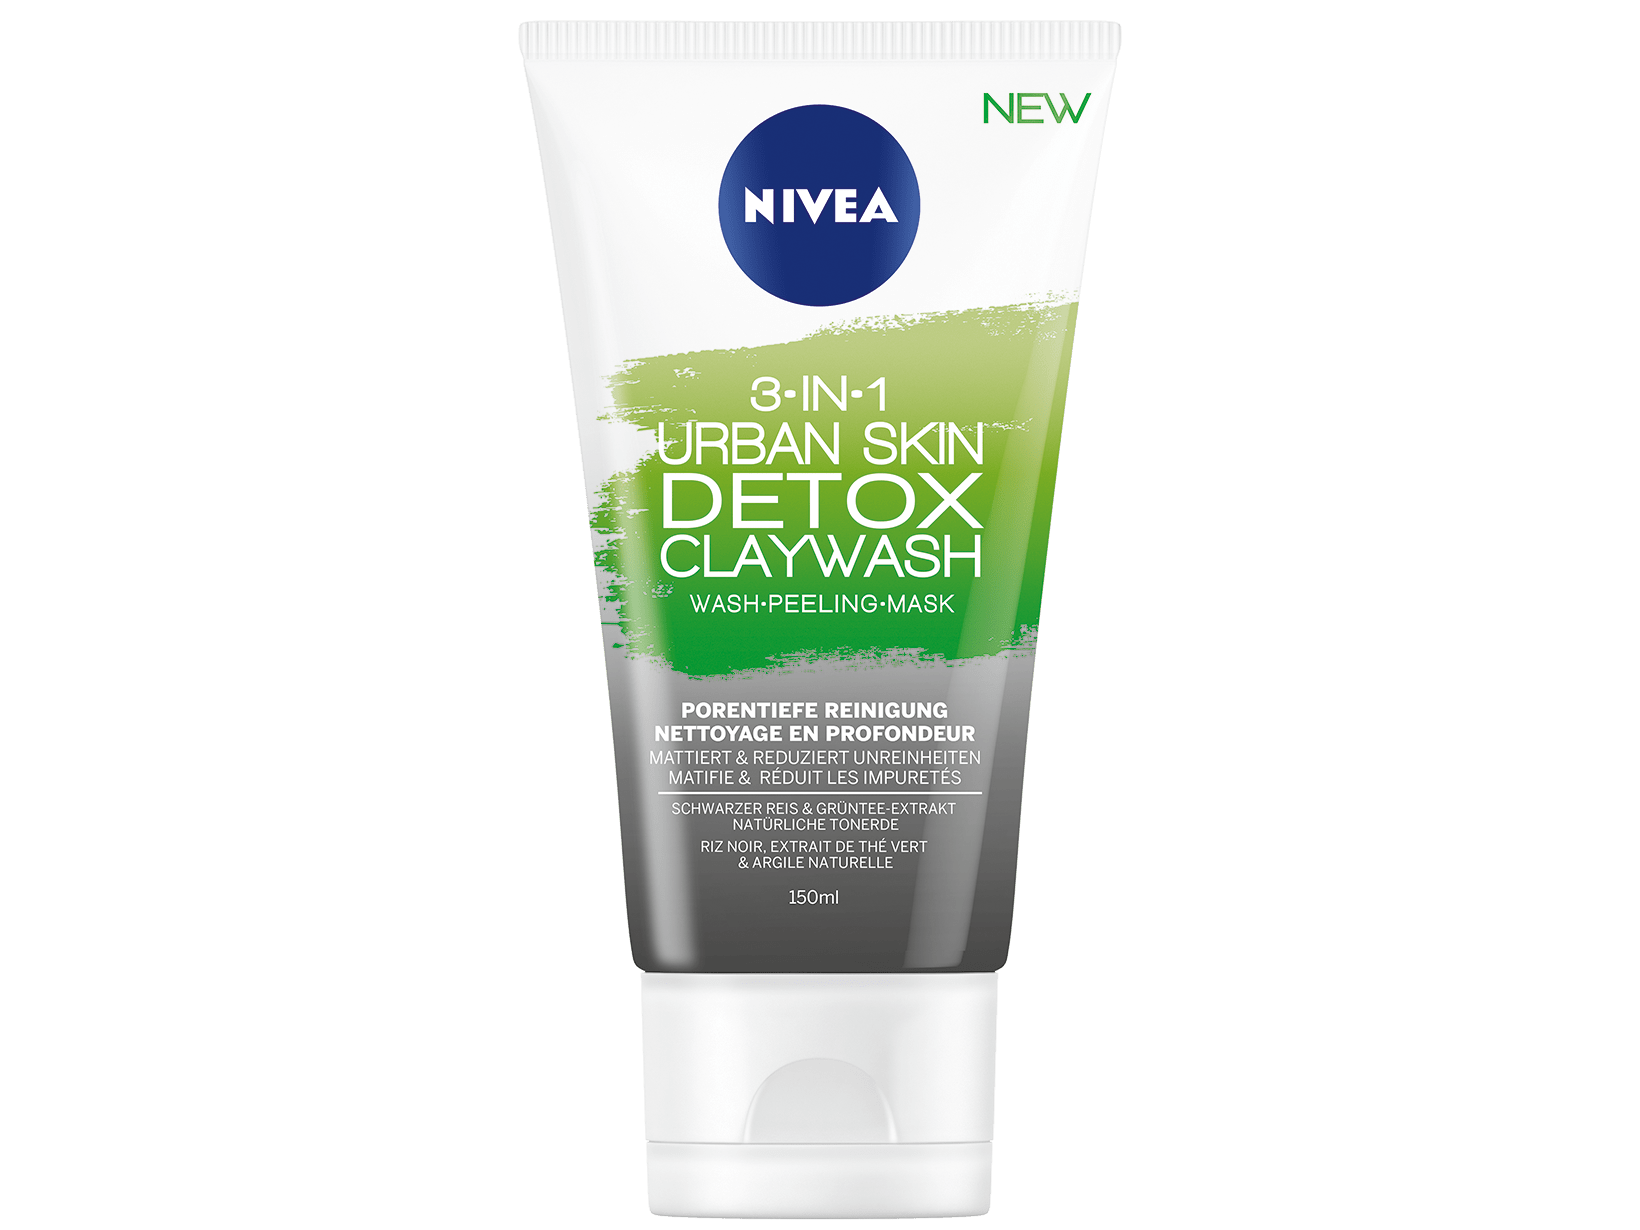 Claywash 3-en-1 Urban Skin Detox NIVEA